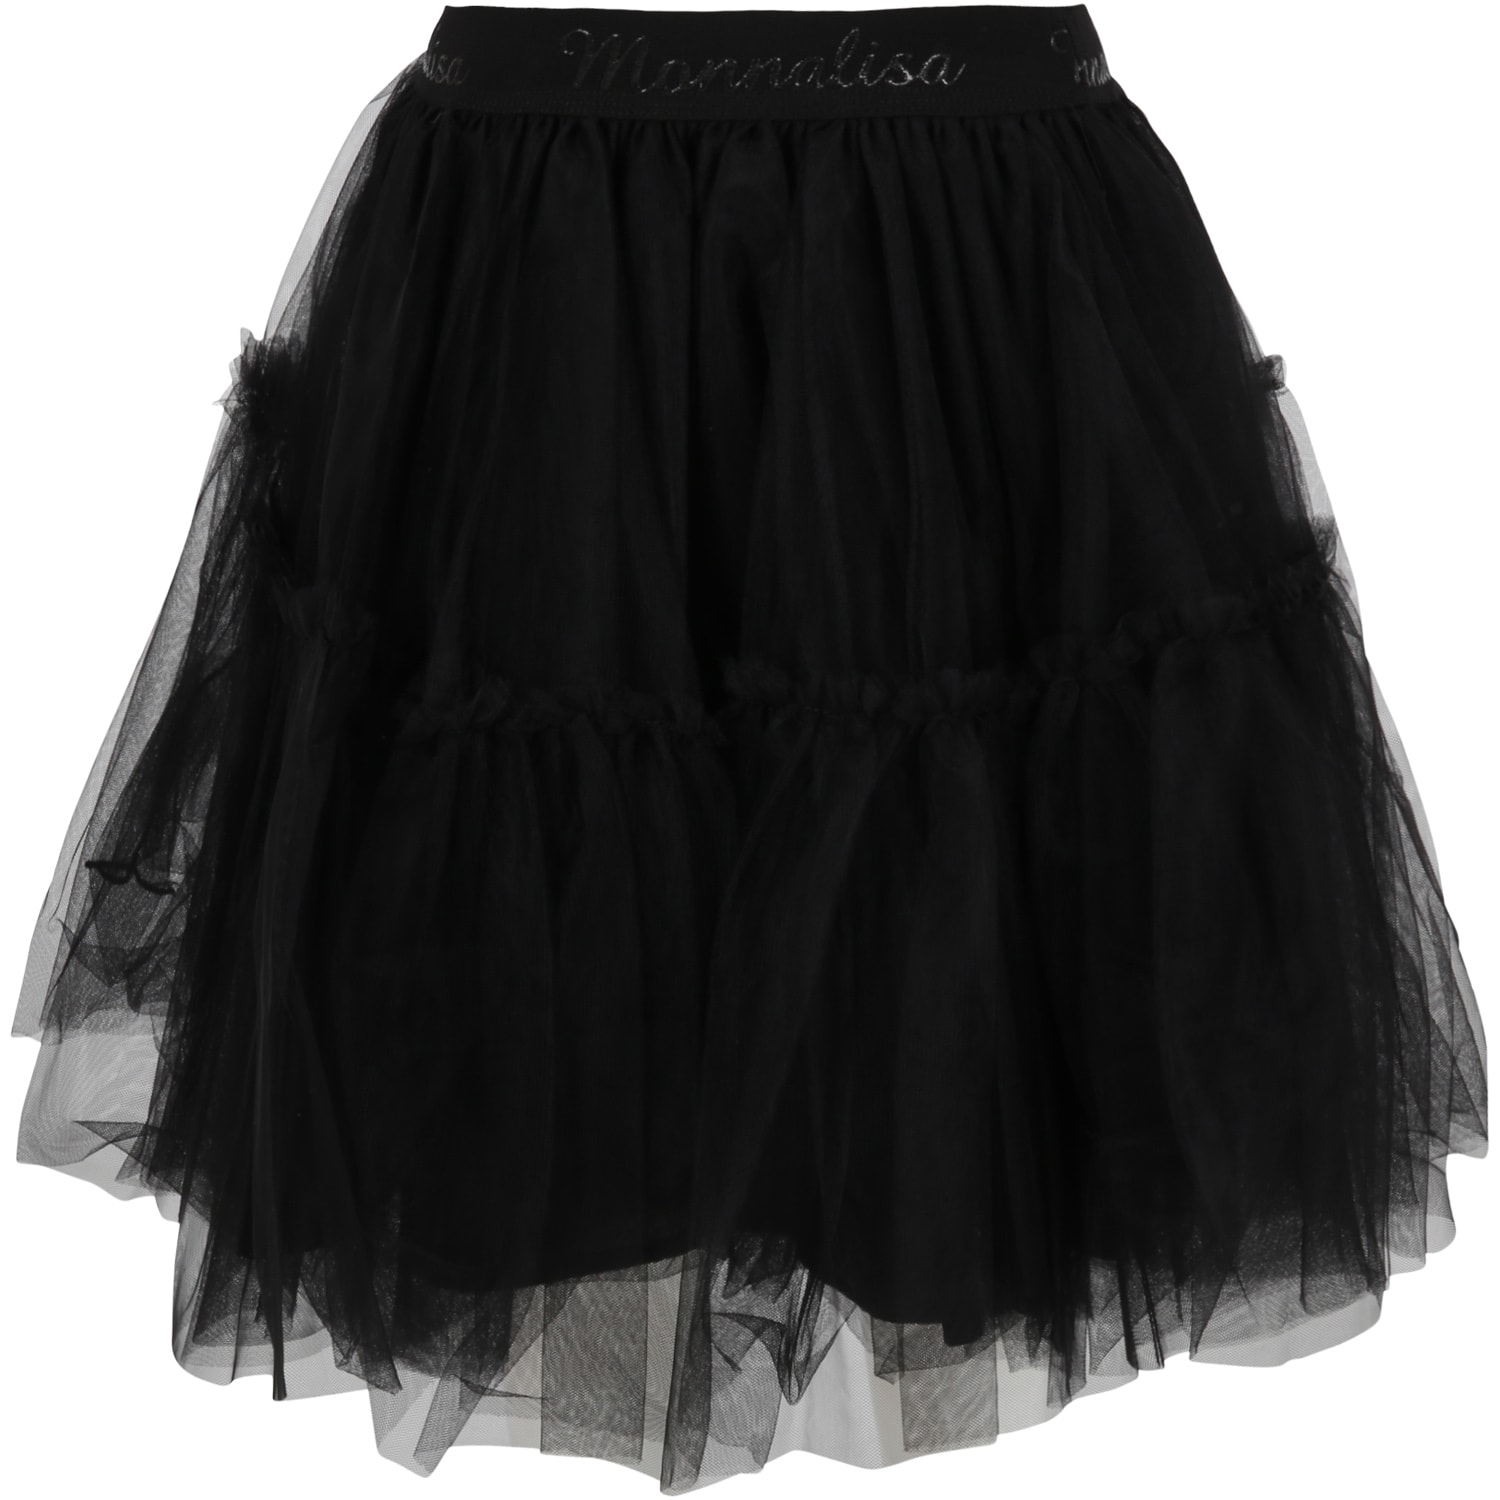 Monnalisa Black Skirt For Girl With Logos